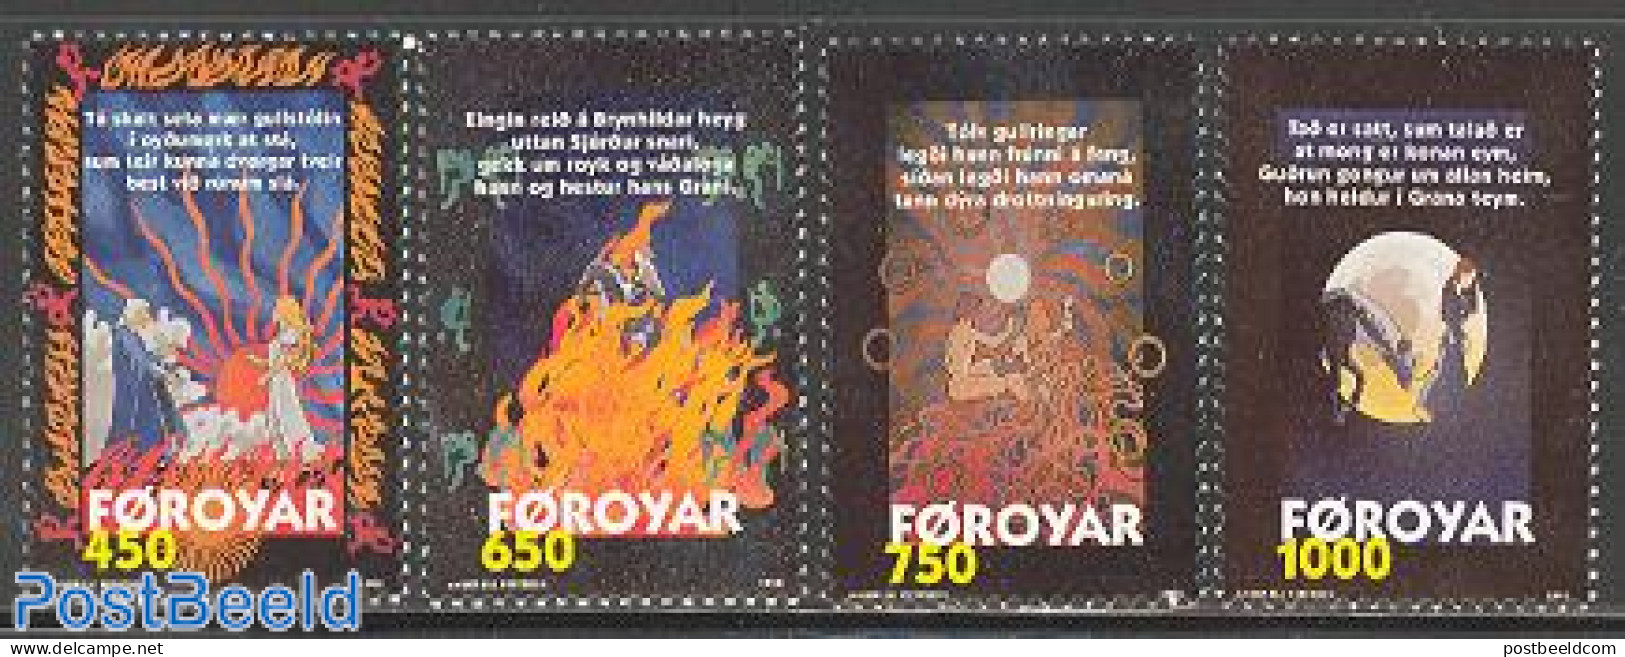 Faroe Islands 1998 Nordic Legends 4v, Mint NH, Art - Fairytales - Cuentos, Fabulas Y Leyendas